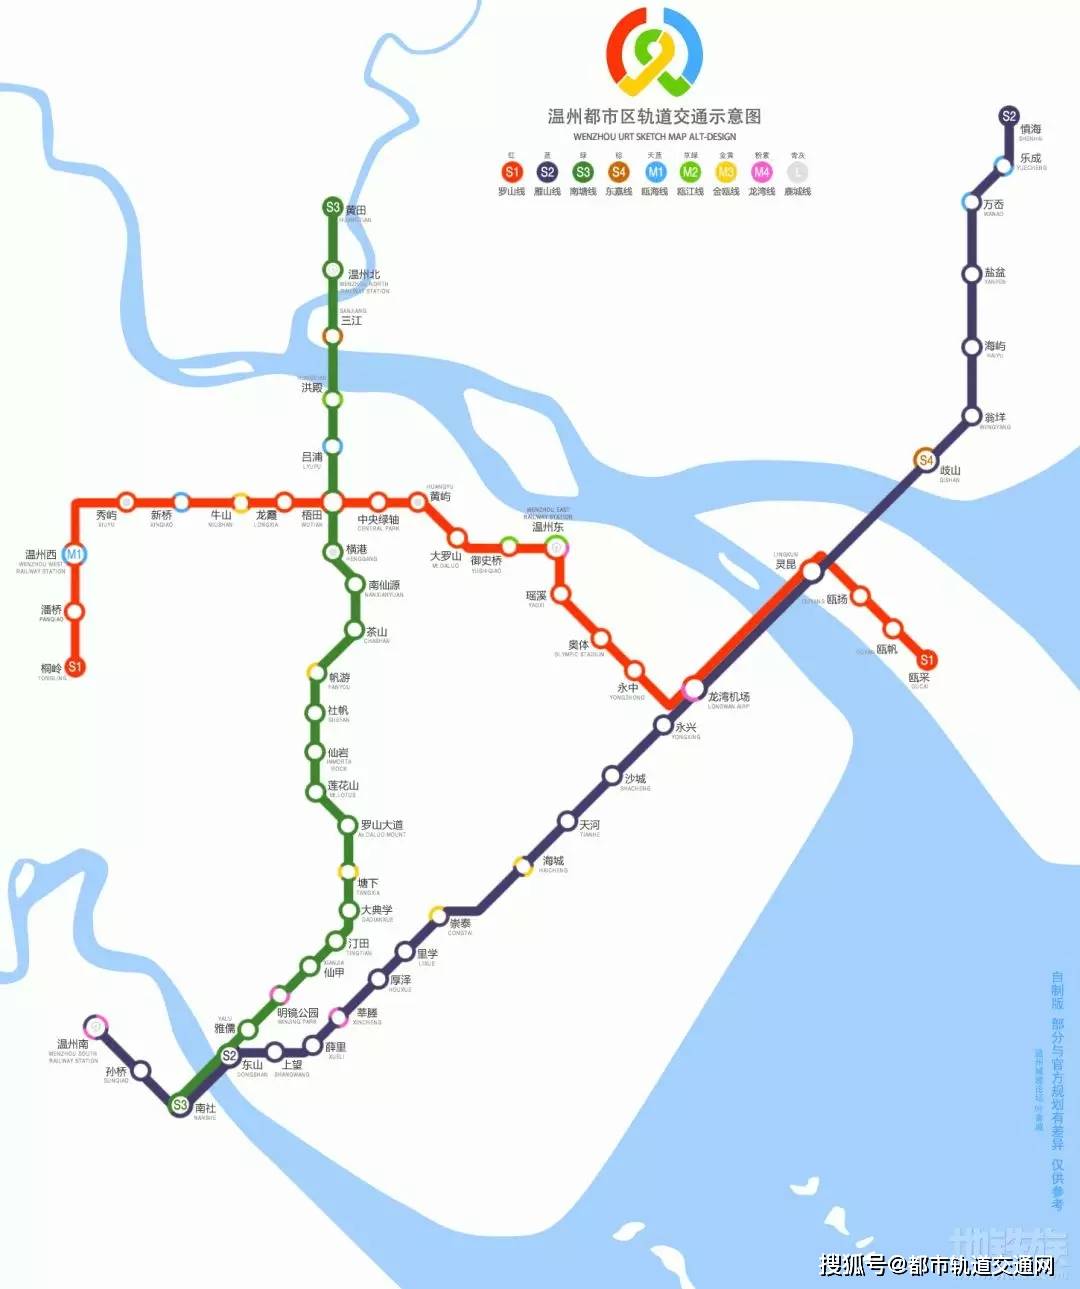 温州轨道交通:s1线开通运营,s2线,s3线在建,拟建线路7条